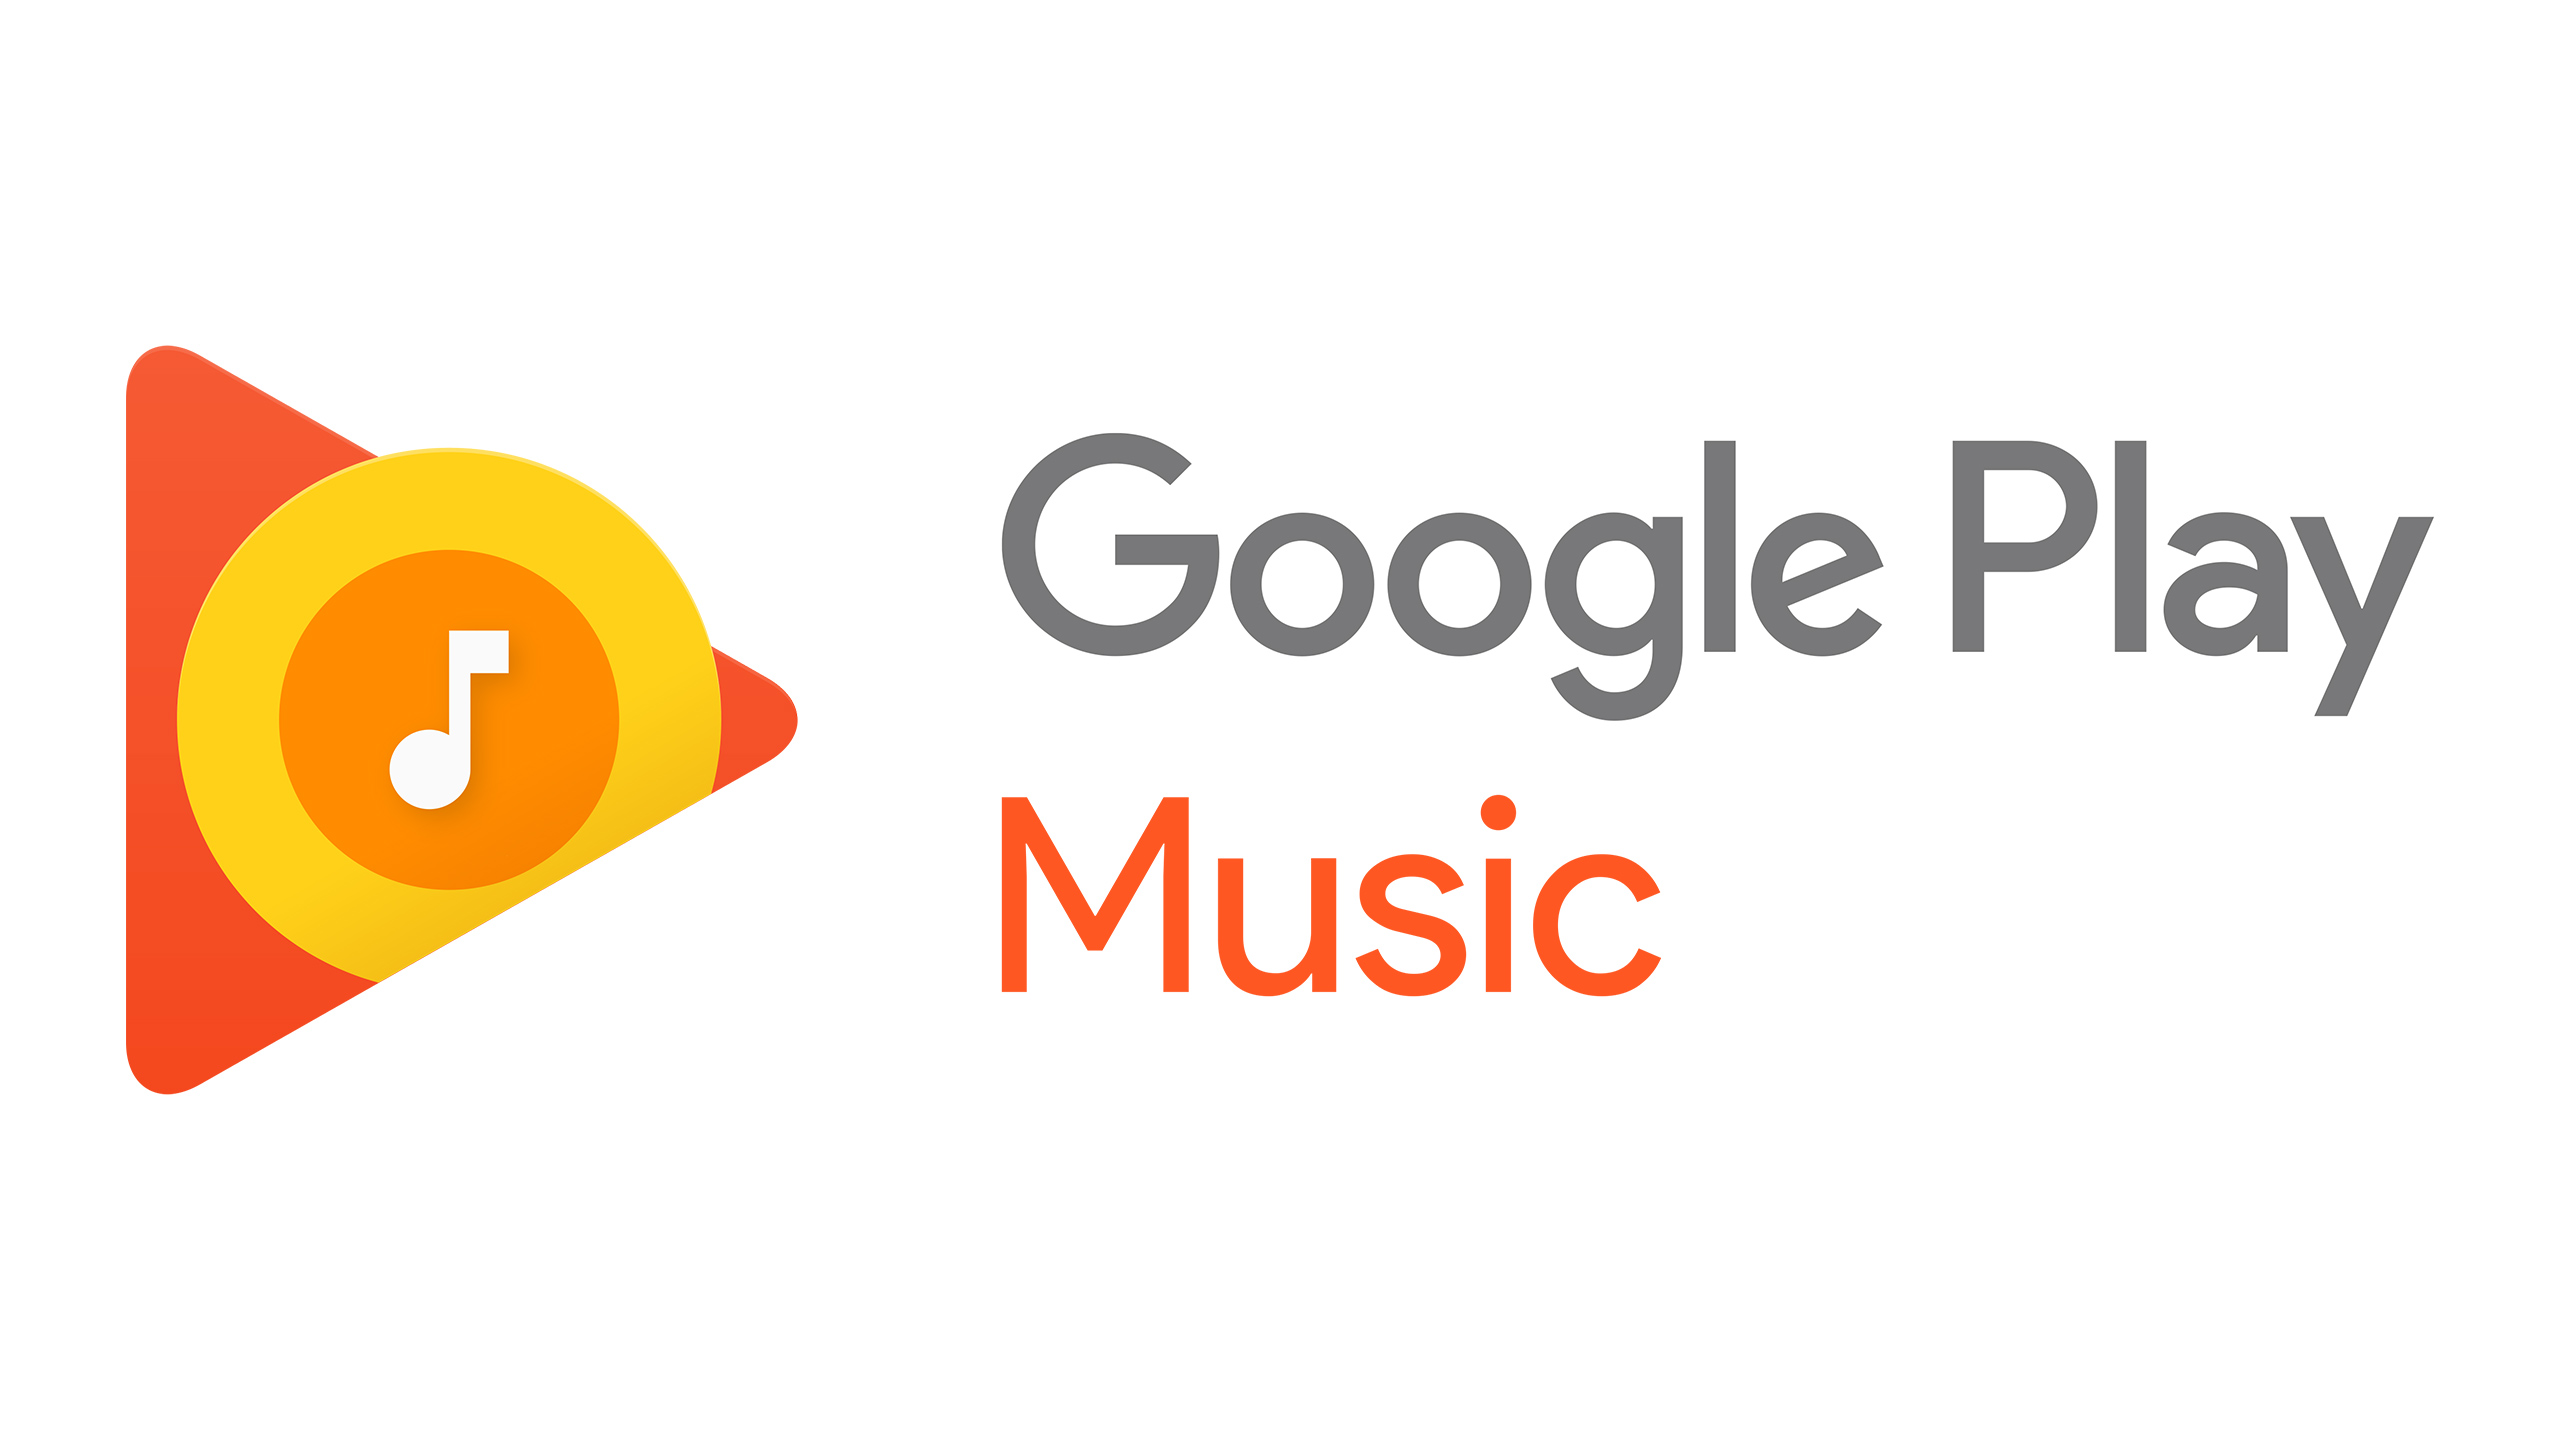 Google Music представляет собой ответ поискового гиганта на iTunes Store и Amazon MP3 Это облачный музыкальный сервис от Google, позволяющий пользователям слушать музыку и покупать новые композиции и альбомы из Play Store